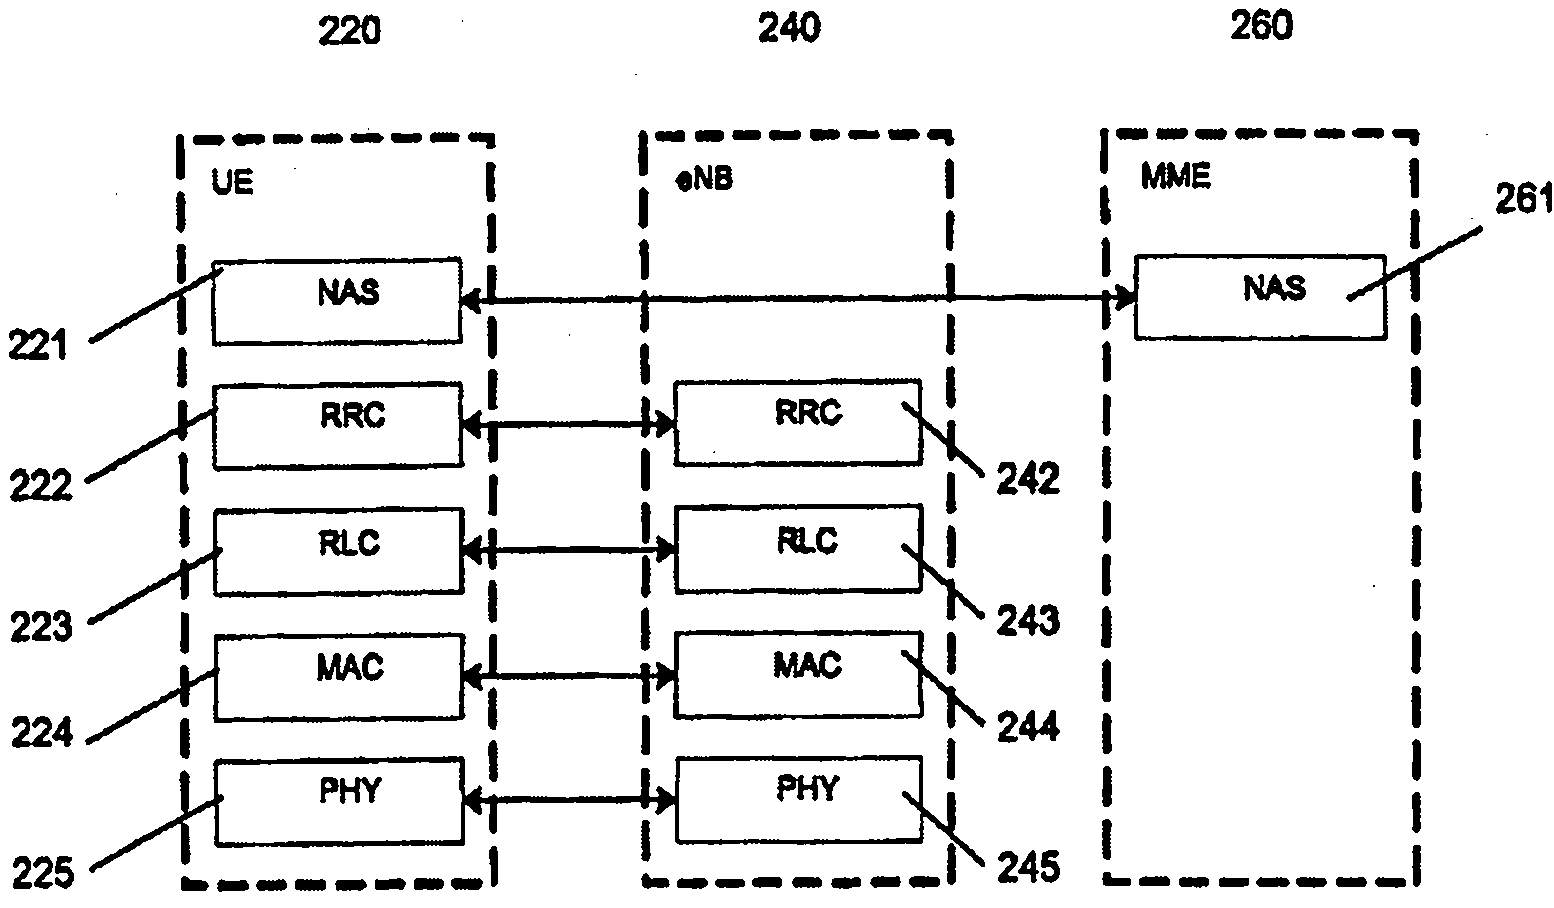 Method for transmitting MAC PDU